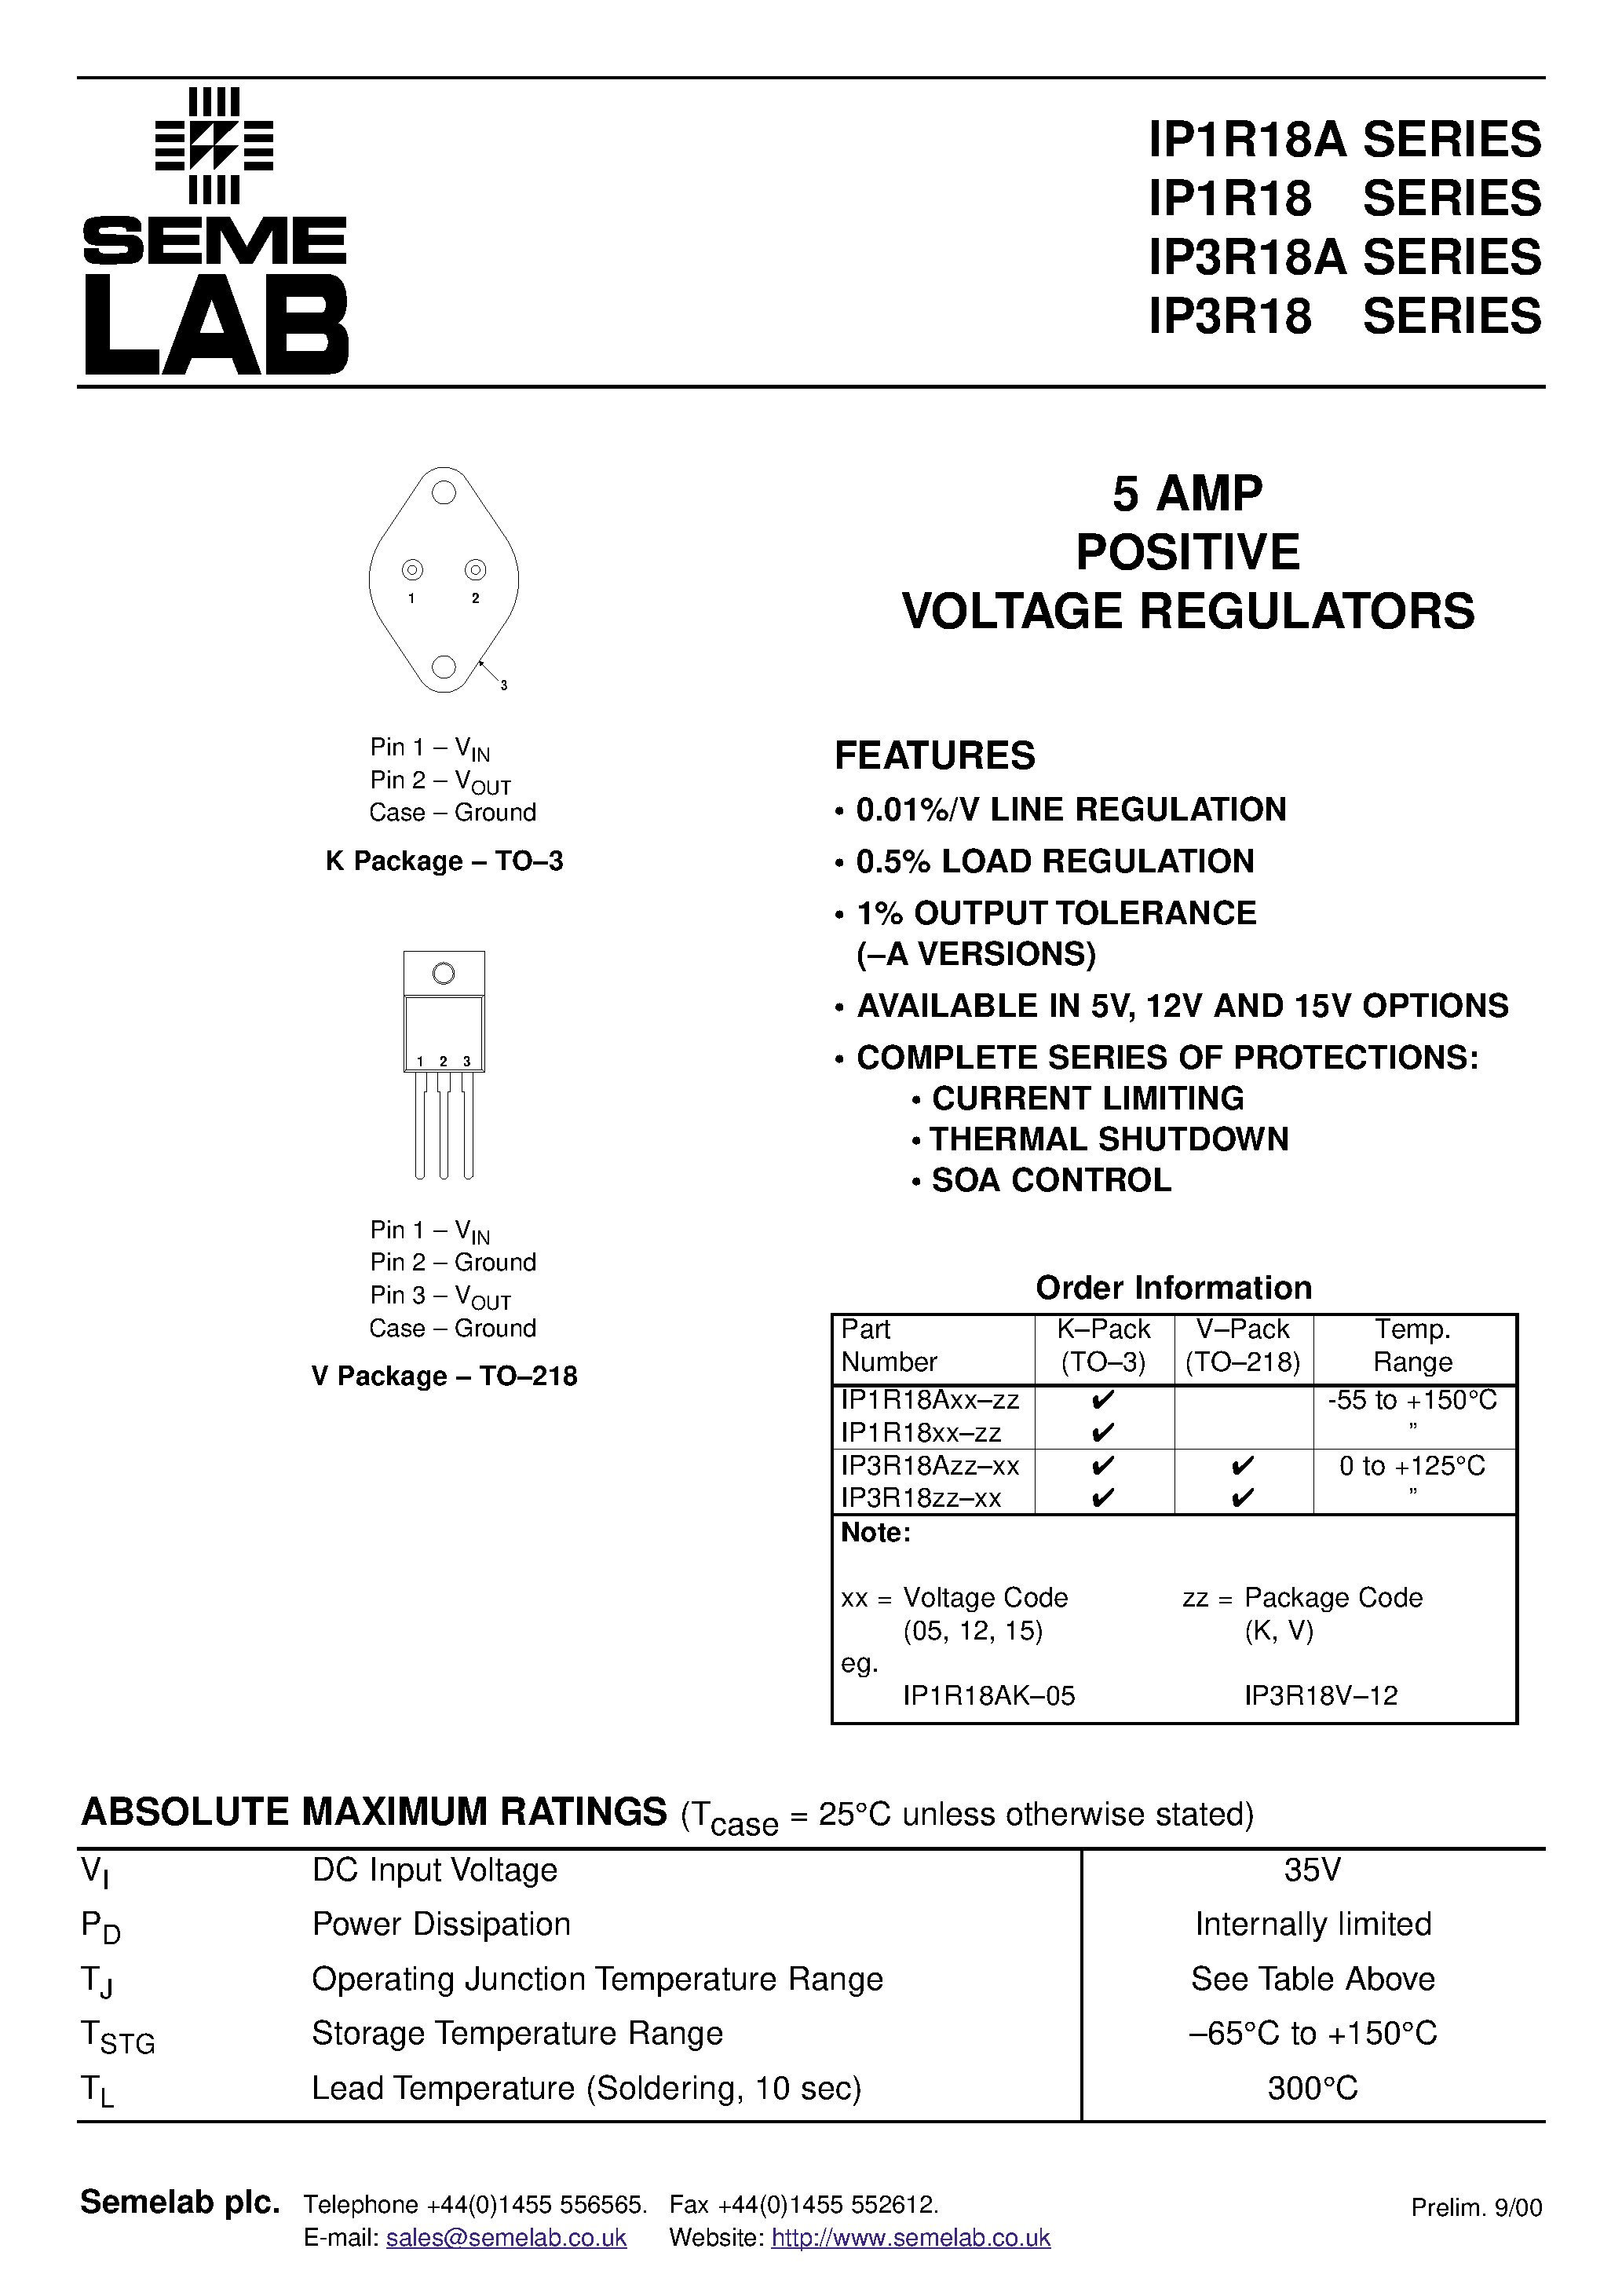 Datasheet IP1R18A15-V - 5 AMP POSITIVE VOLTAGE REGULATORS page 1